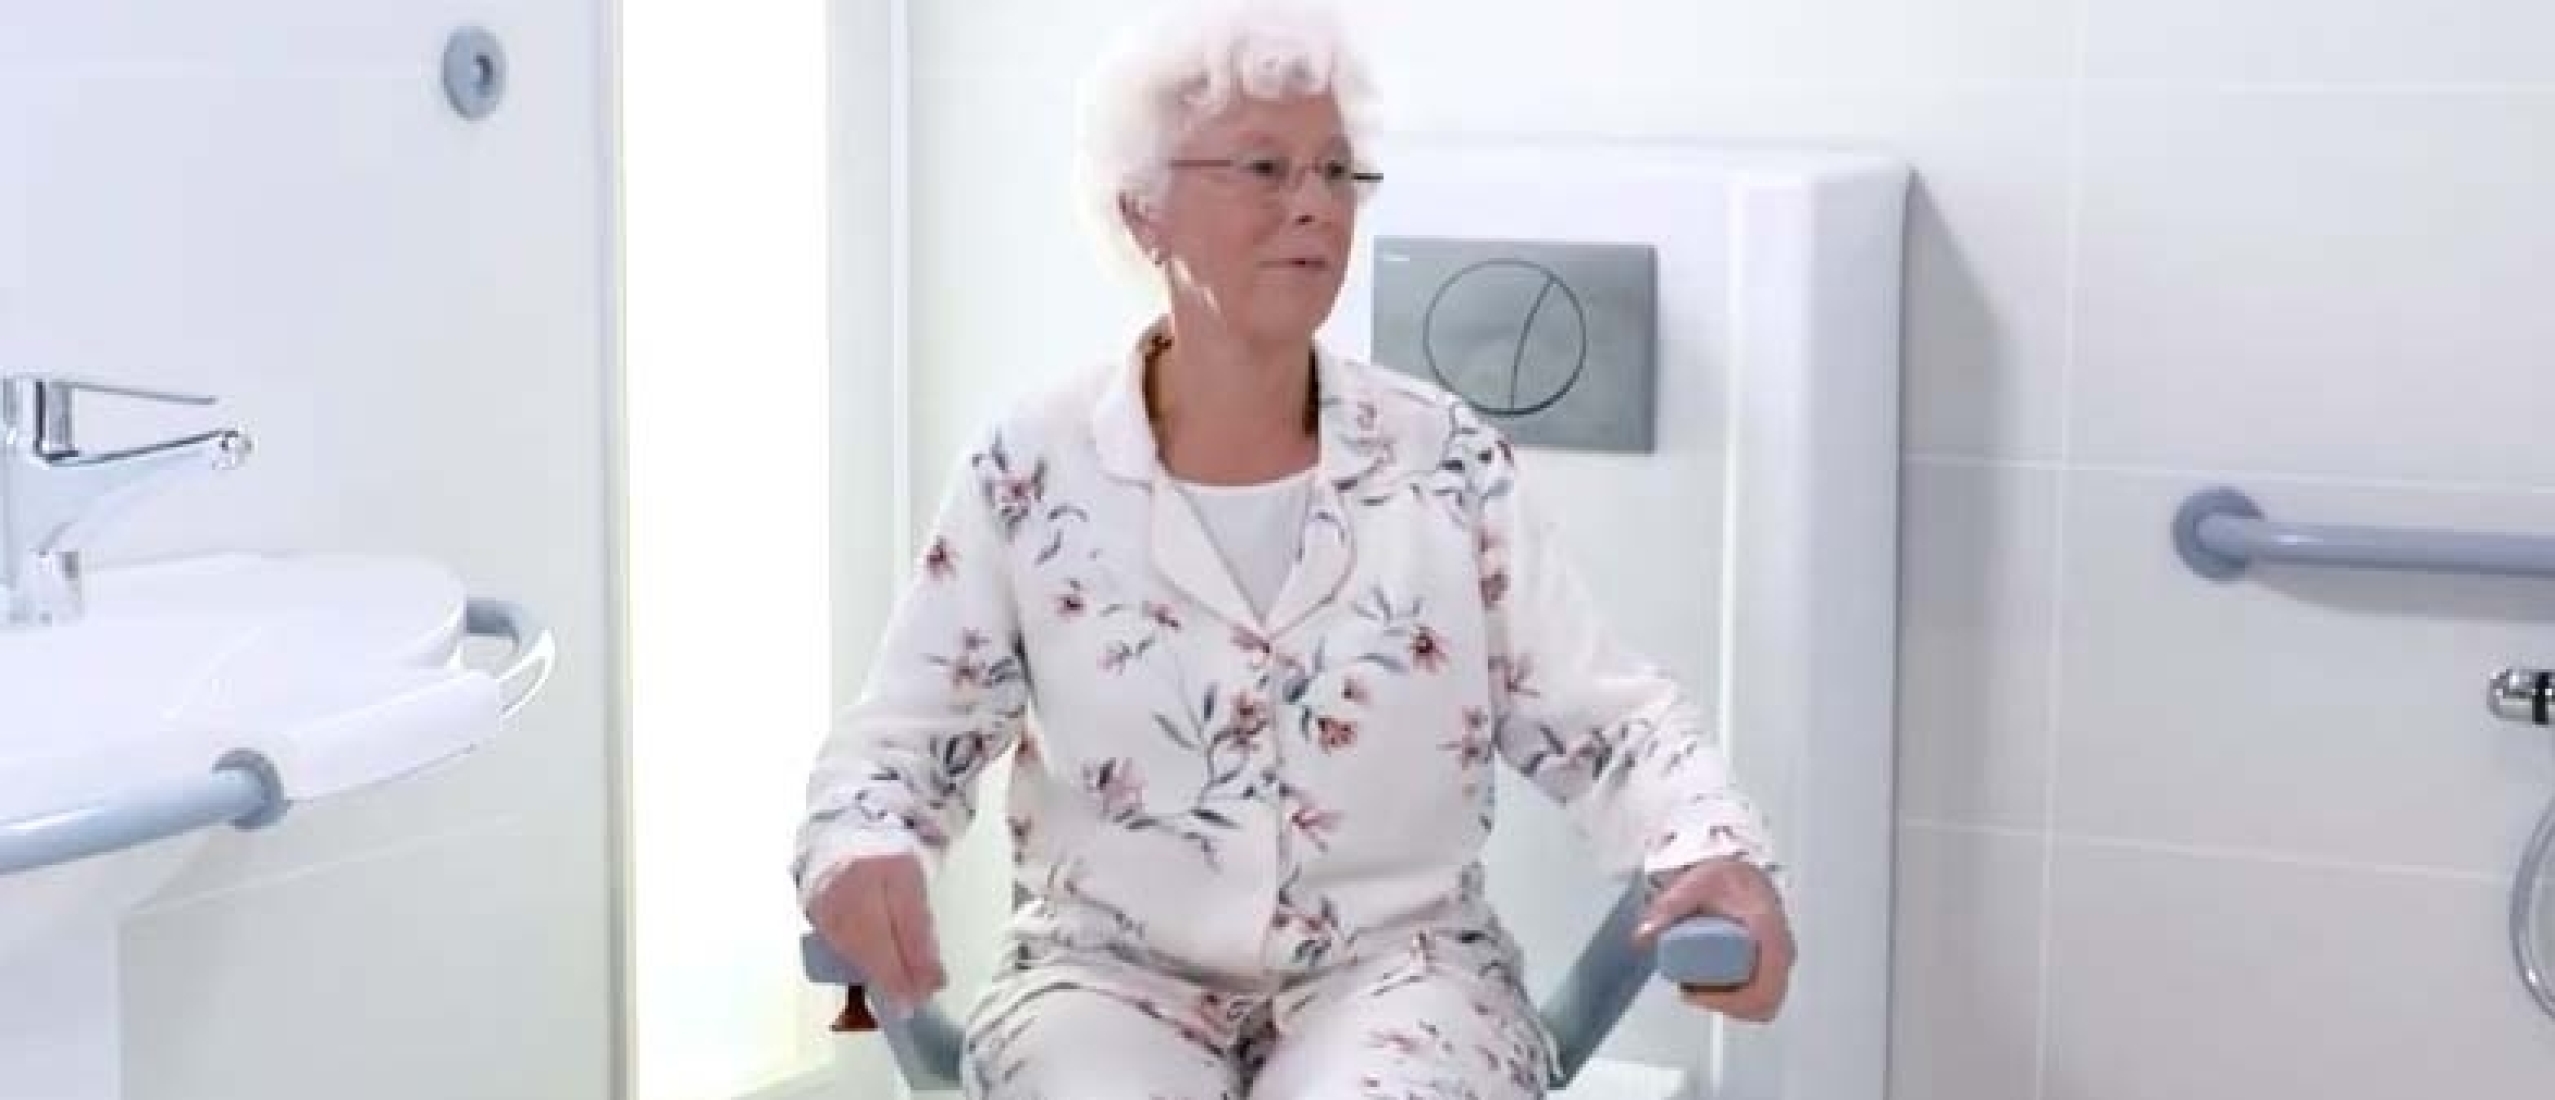 Toiletgang bij dementie: ouderen protocol en hulpmiddelen